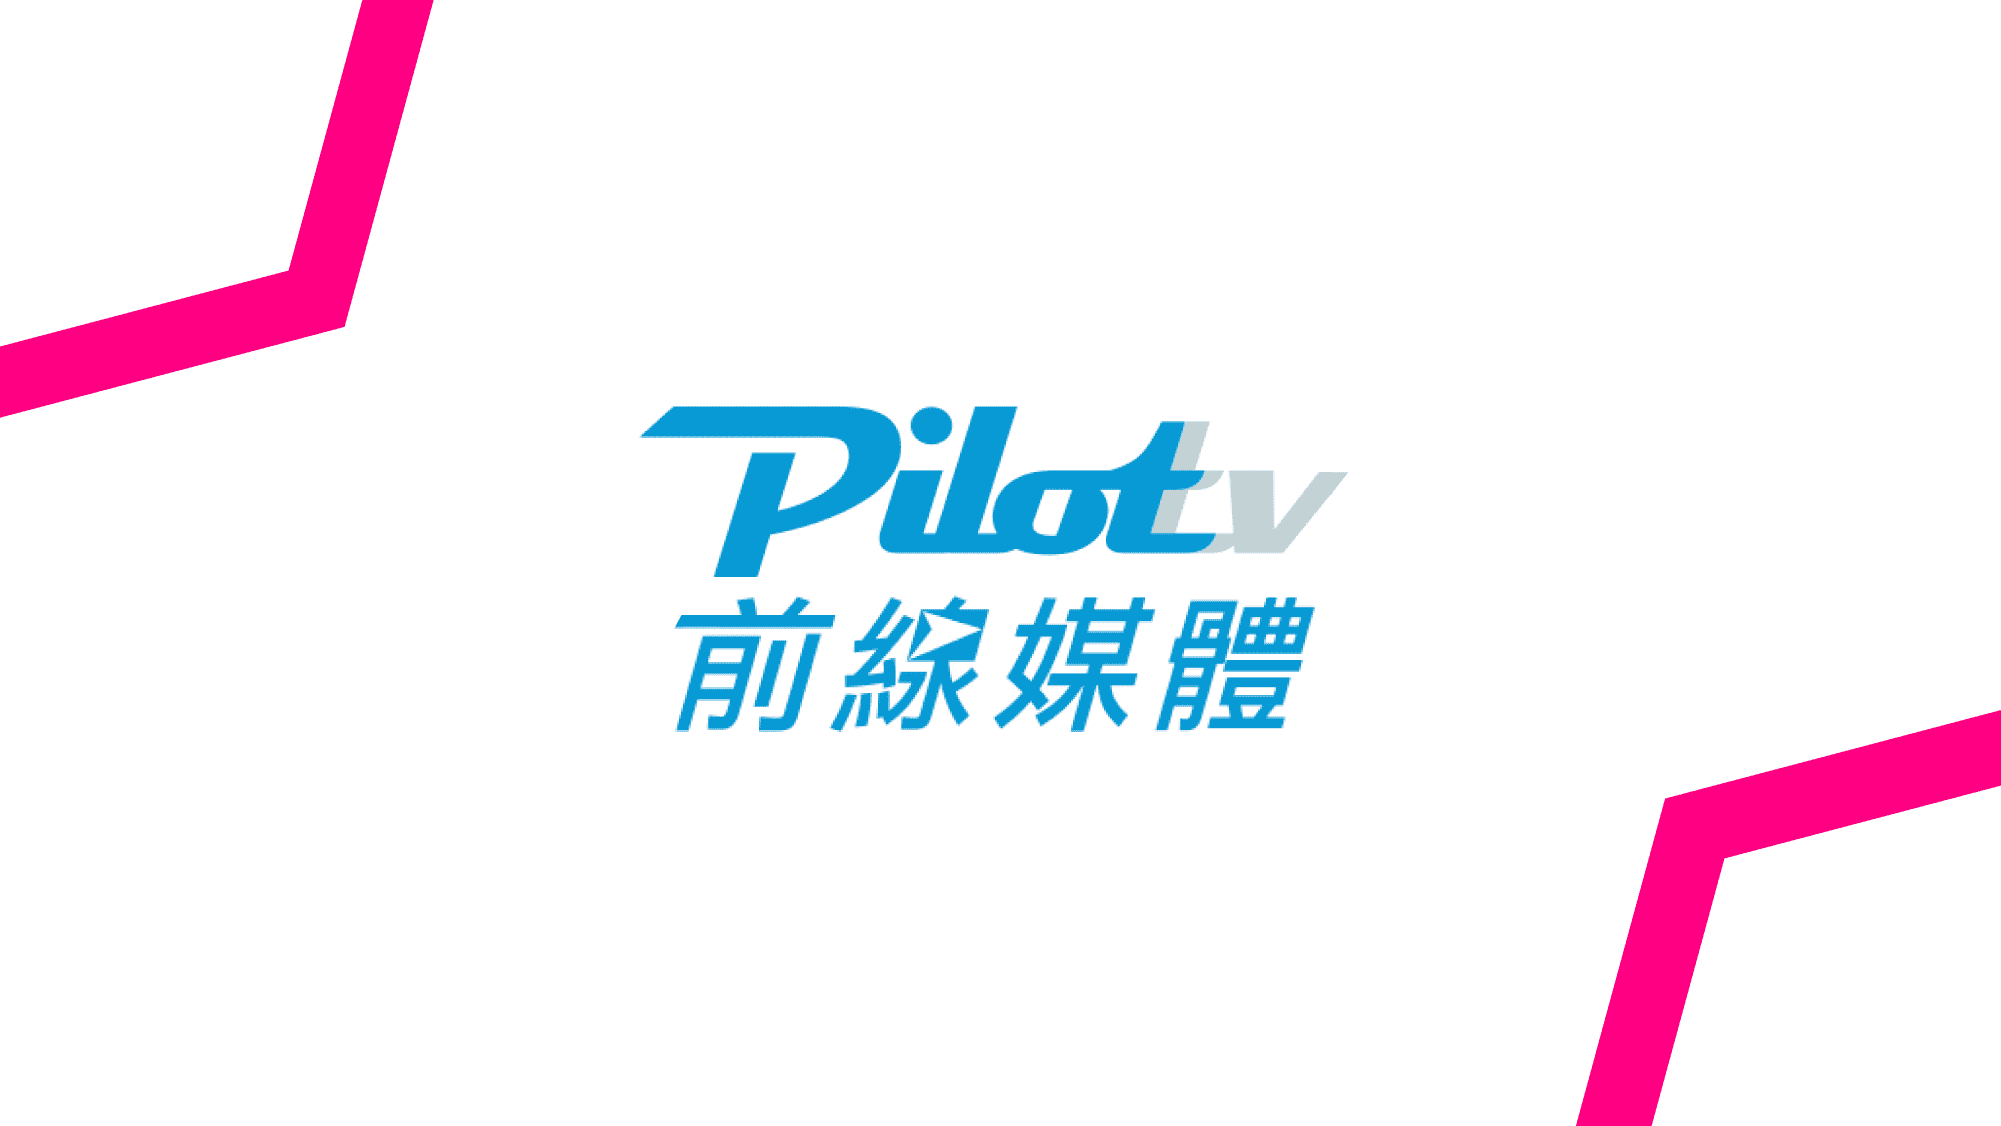 通过该合作伙伴关系，全台湾市场皆能以程序化方式购买 PilotTV 的 DOOH 库存